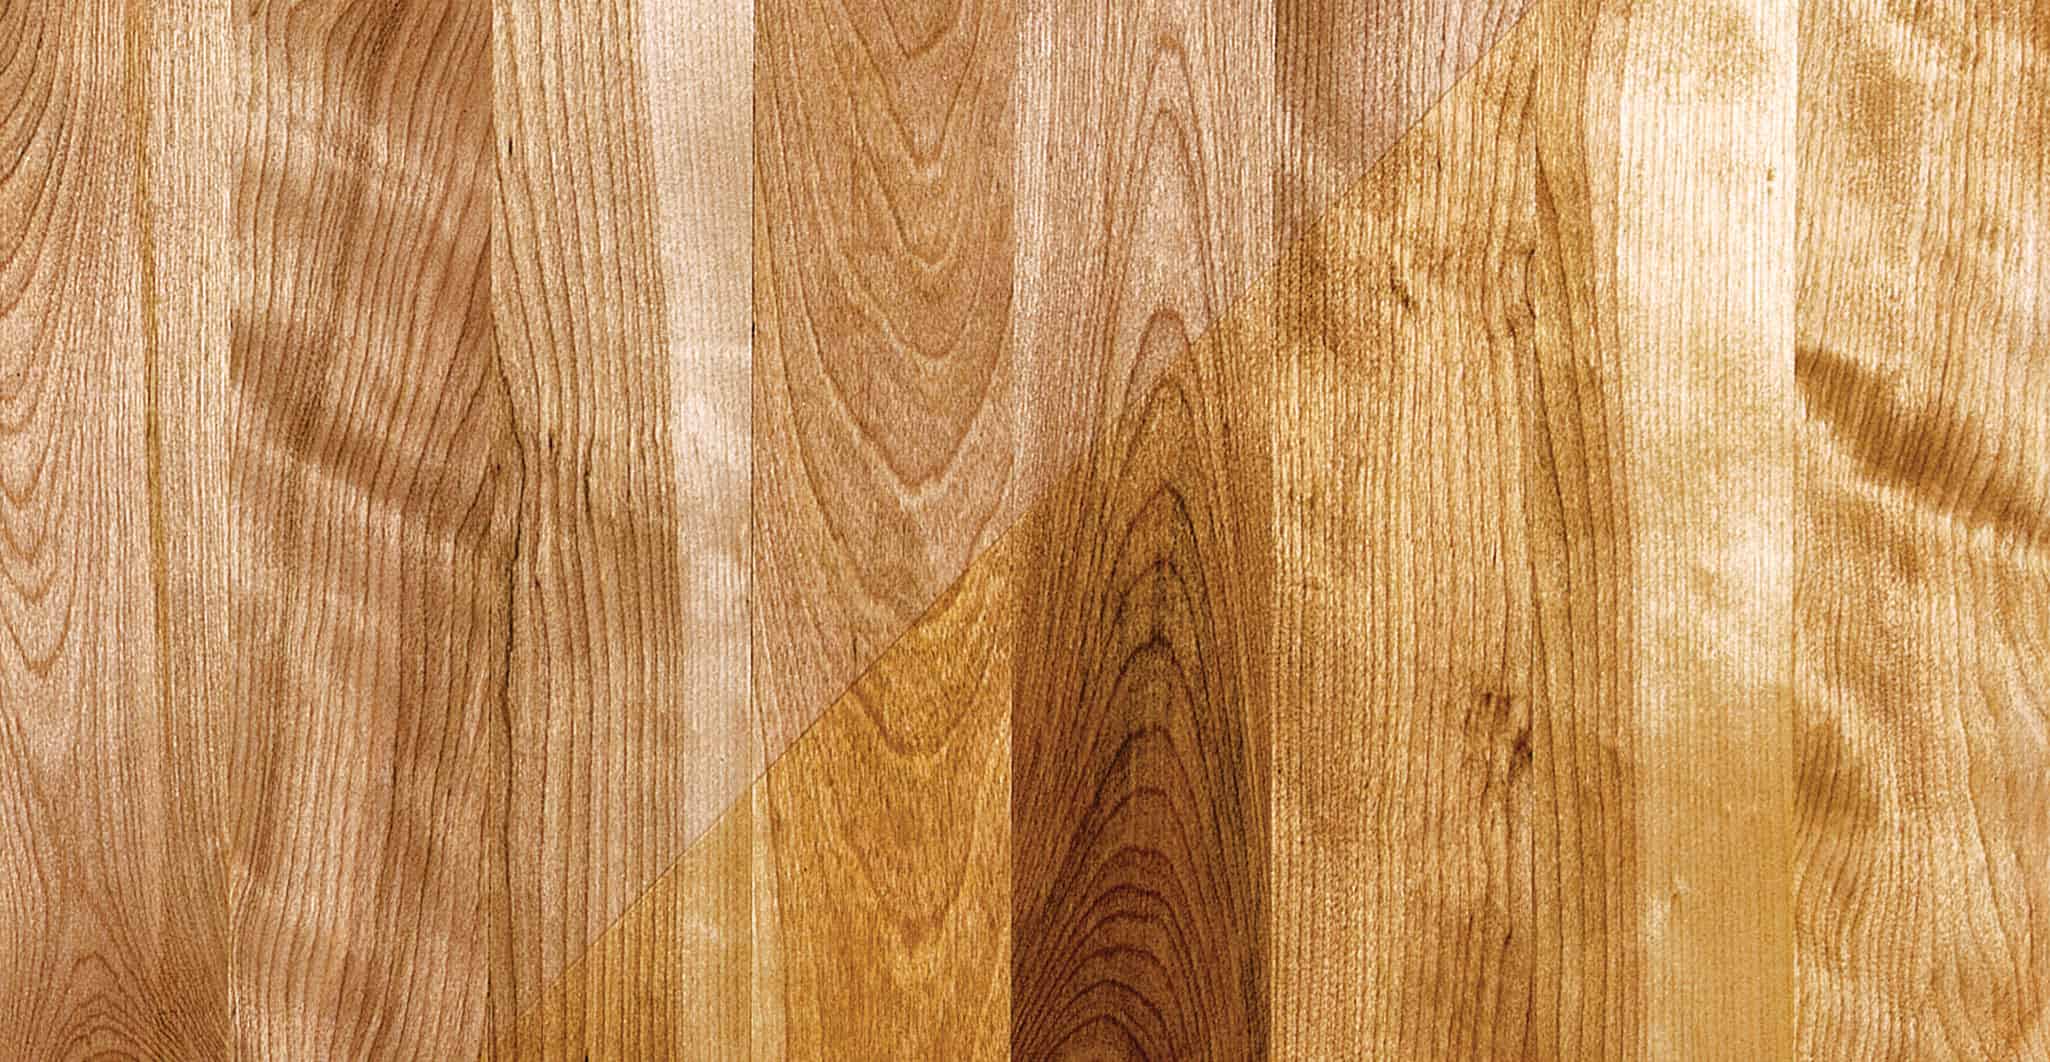 Species Specs Birch Hardwood Floors, Birch Hardwood Flooring Reviews